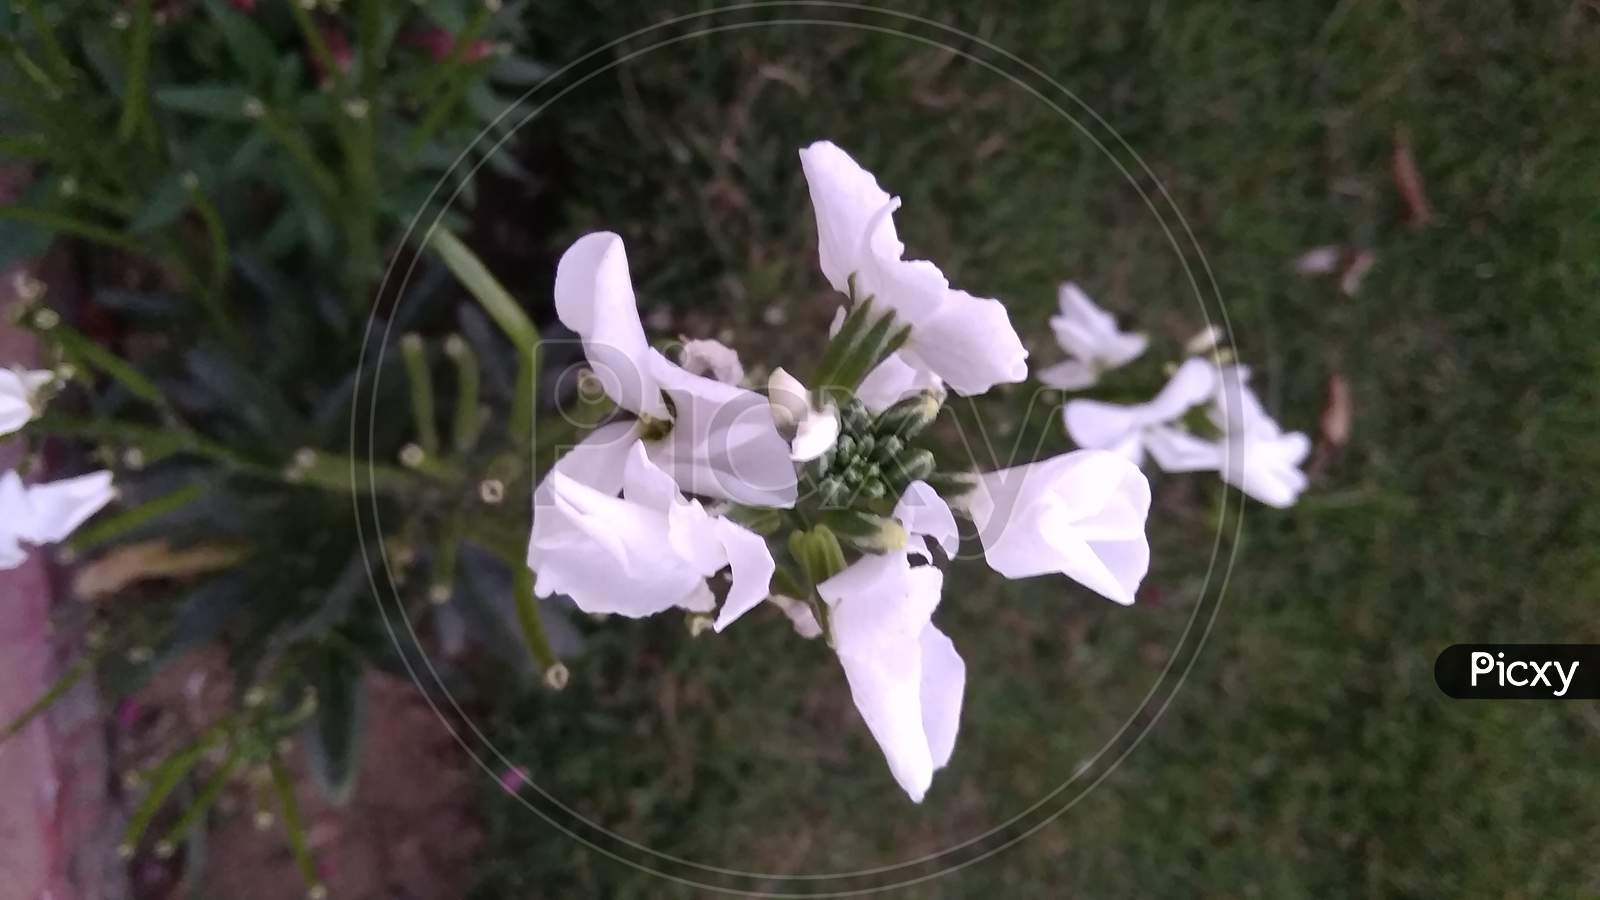 Beautifull jasmine bellflower family petal flower plant